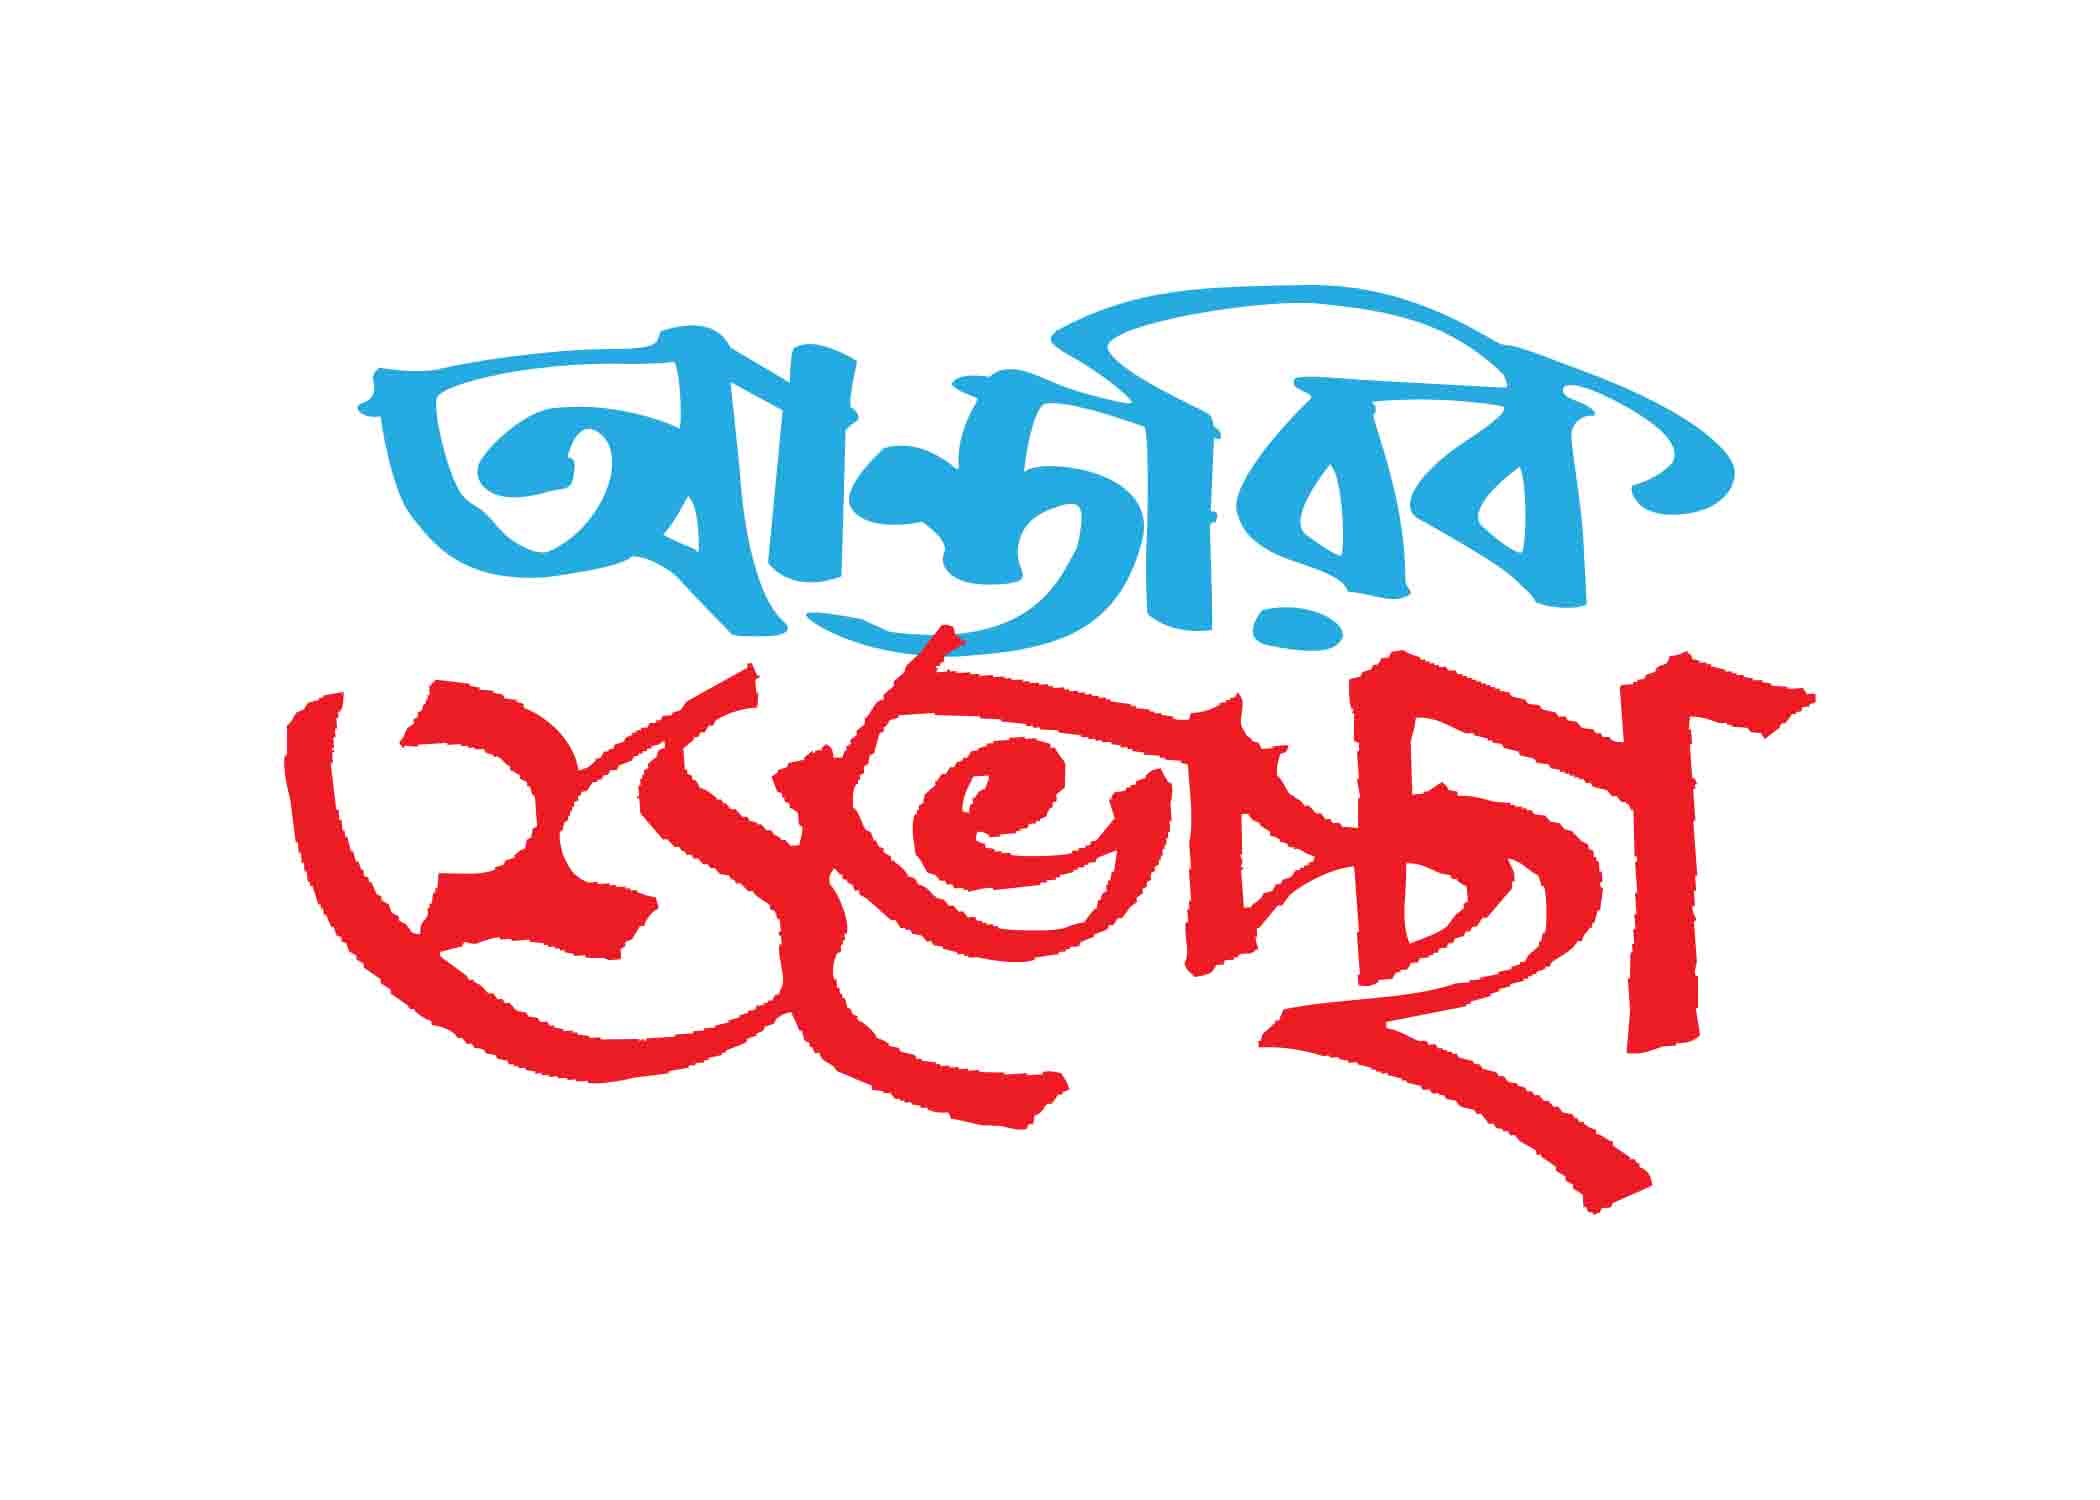 আন্তরিক শুভেচ্ছা টাইপোগ্রাফি । Bangla Typhography PNG